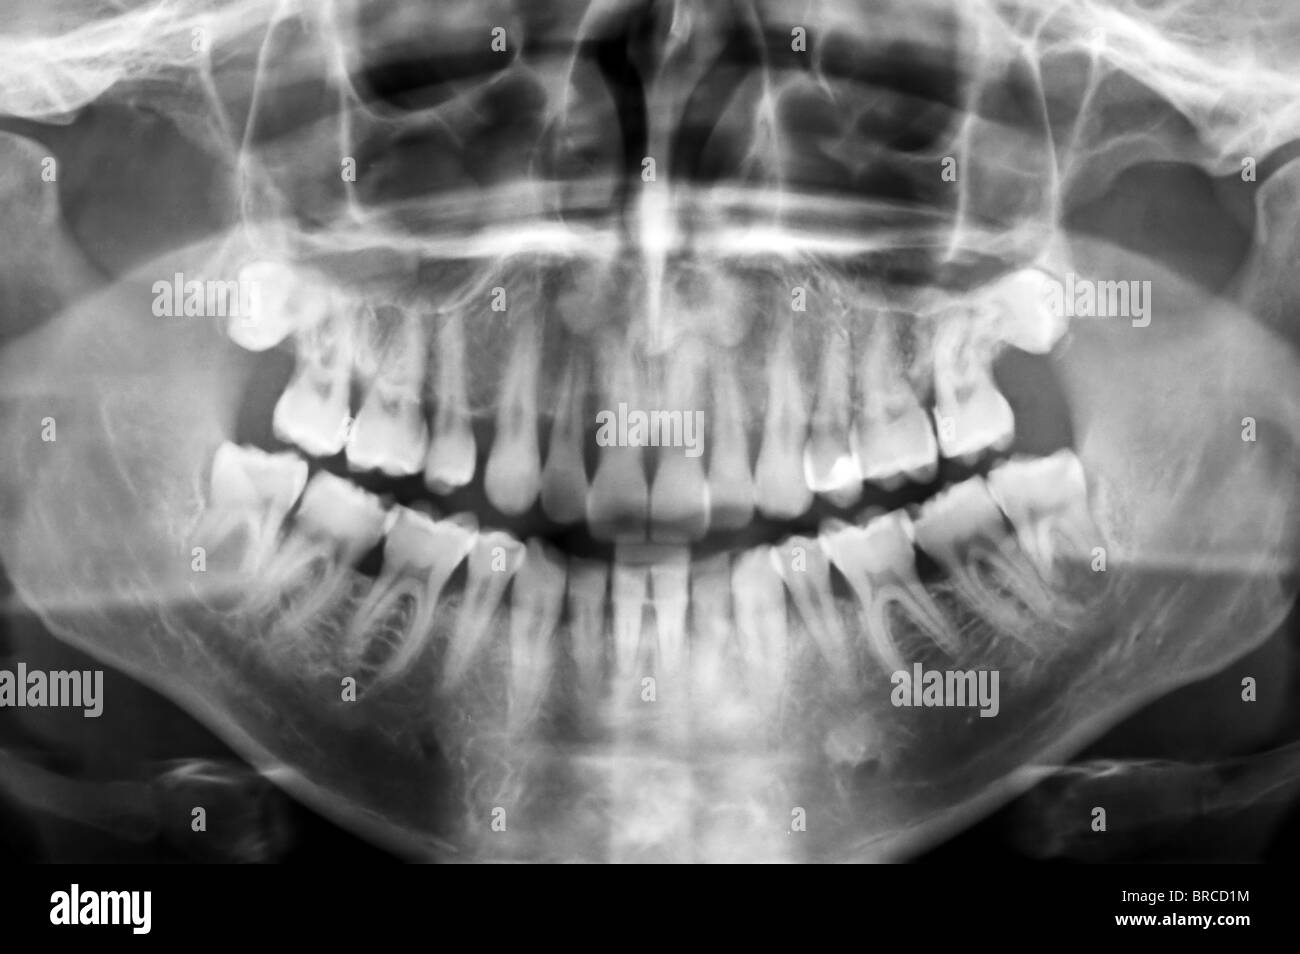 Dentaire365 - DUX DENTAL - TABLIERS DE RADIOLOGIE SANS-PLOMB